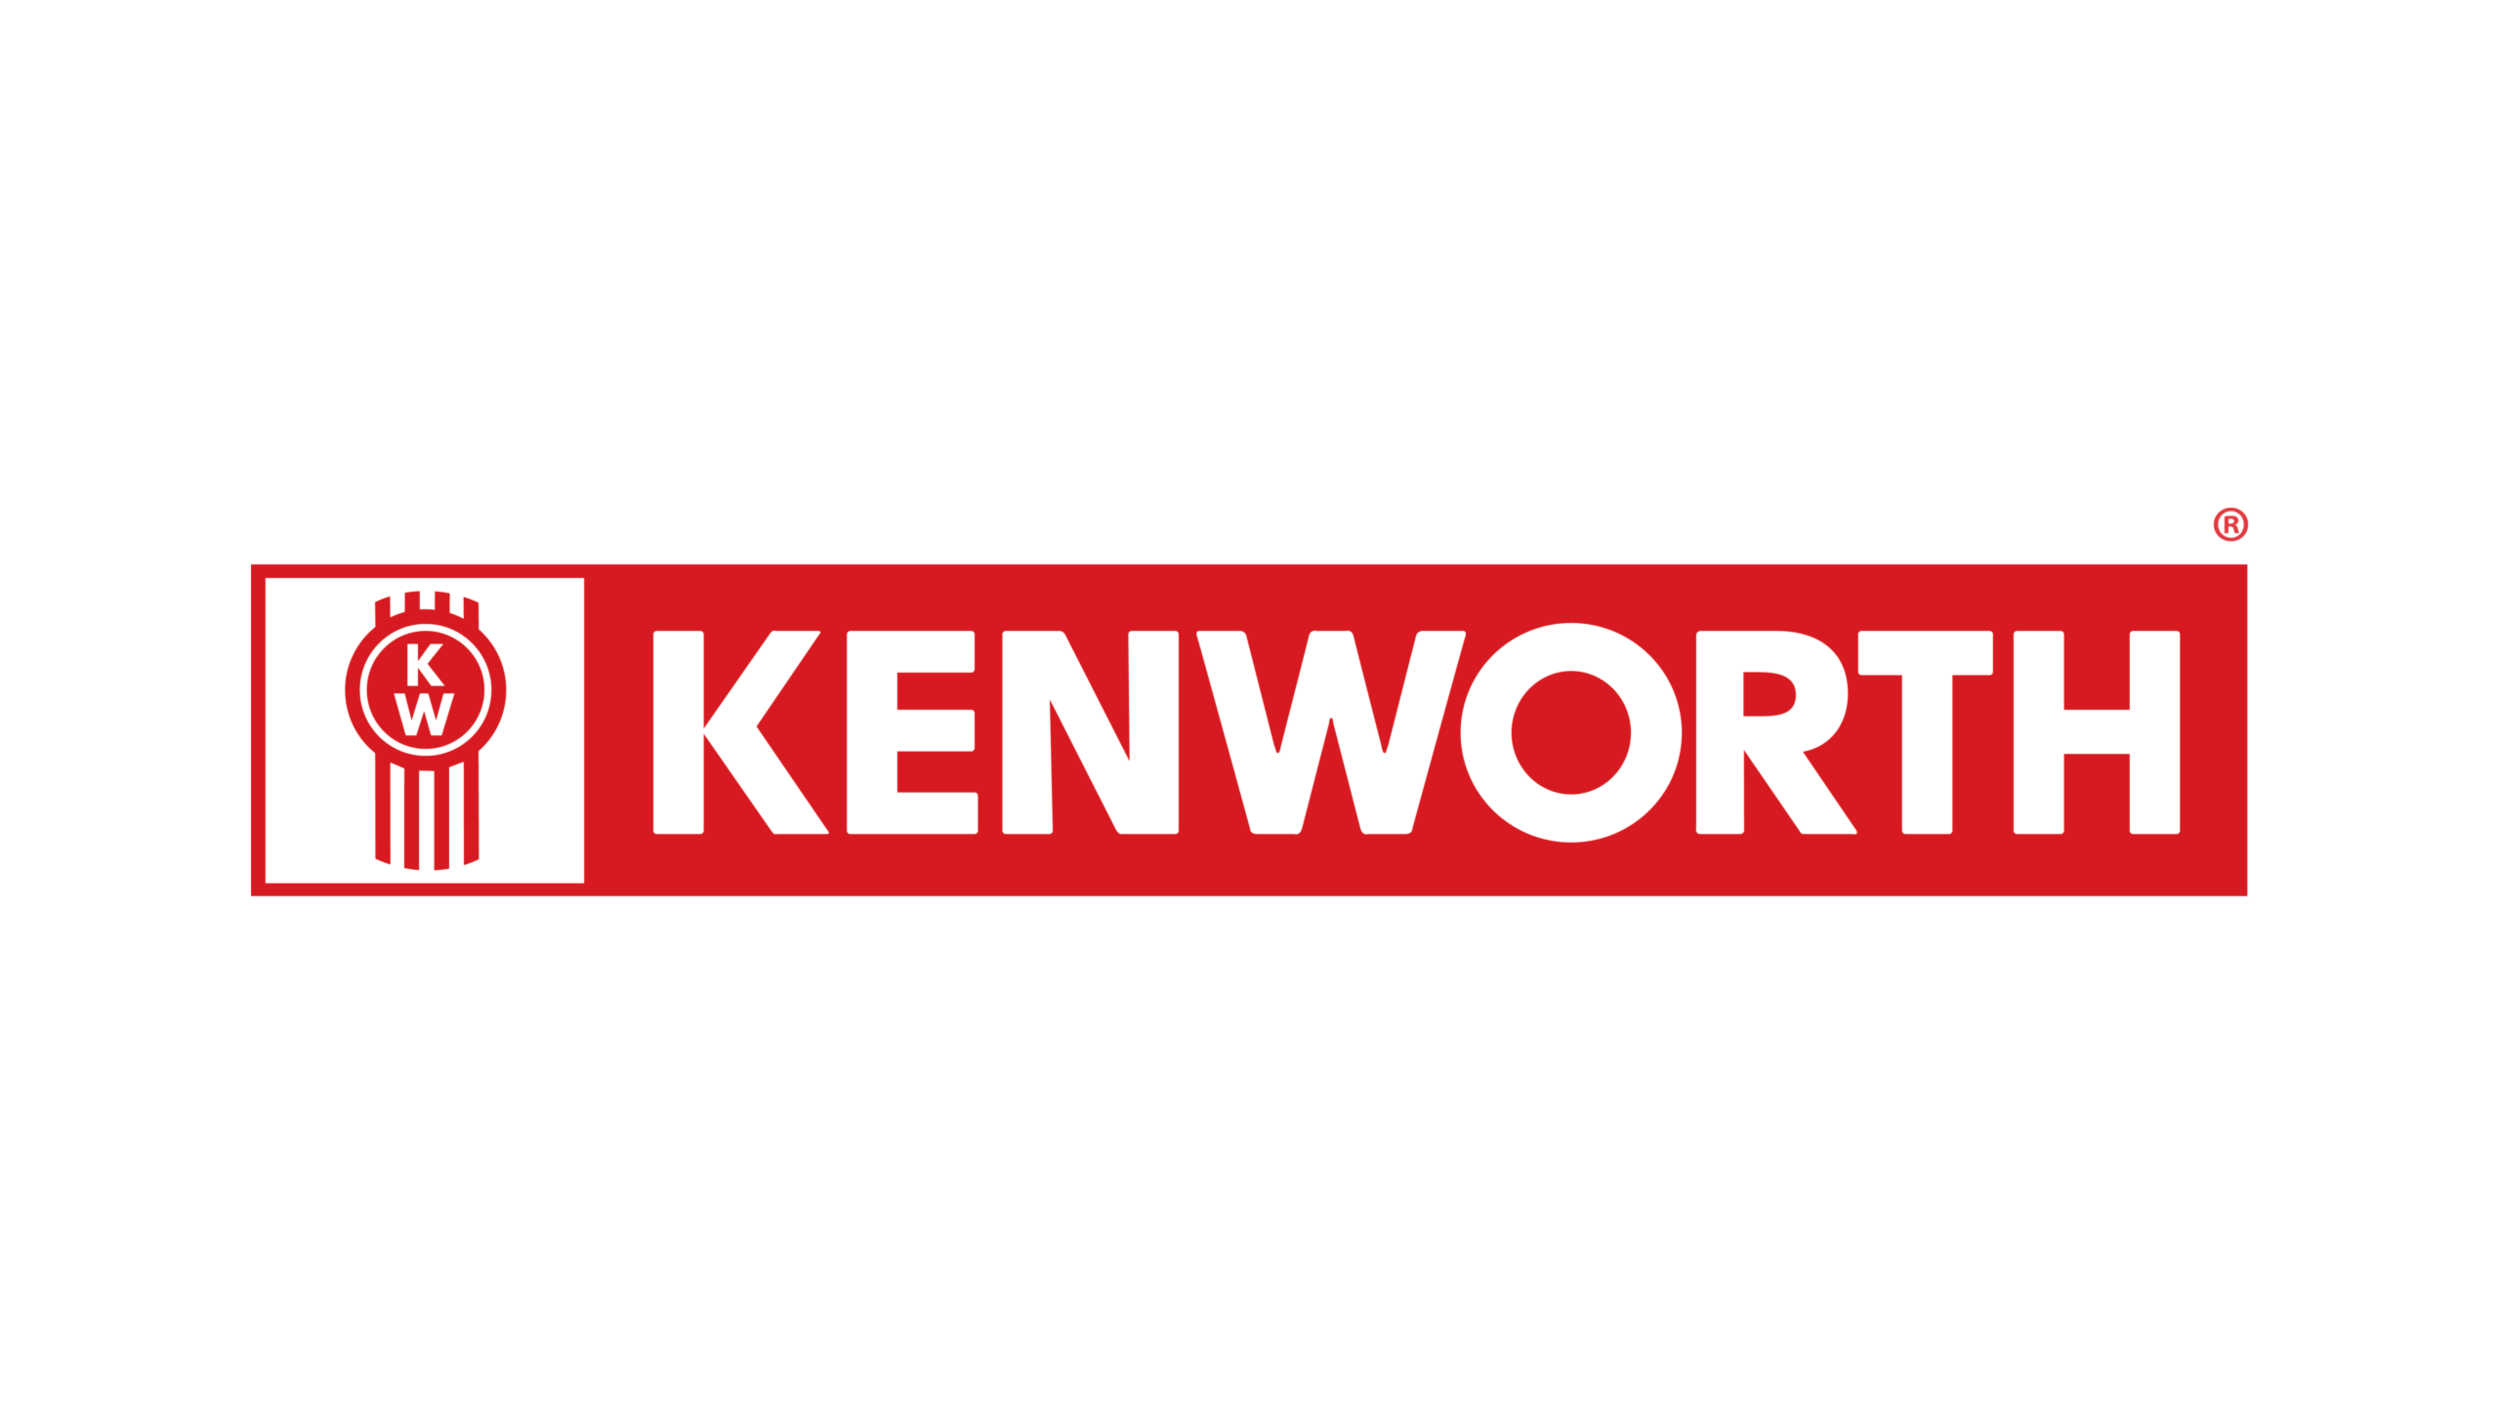 Kenworth-logo-2560x1440.png